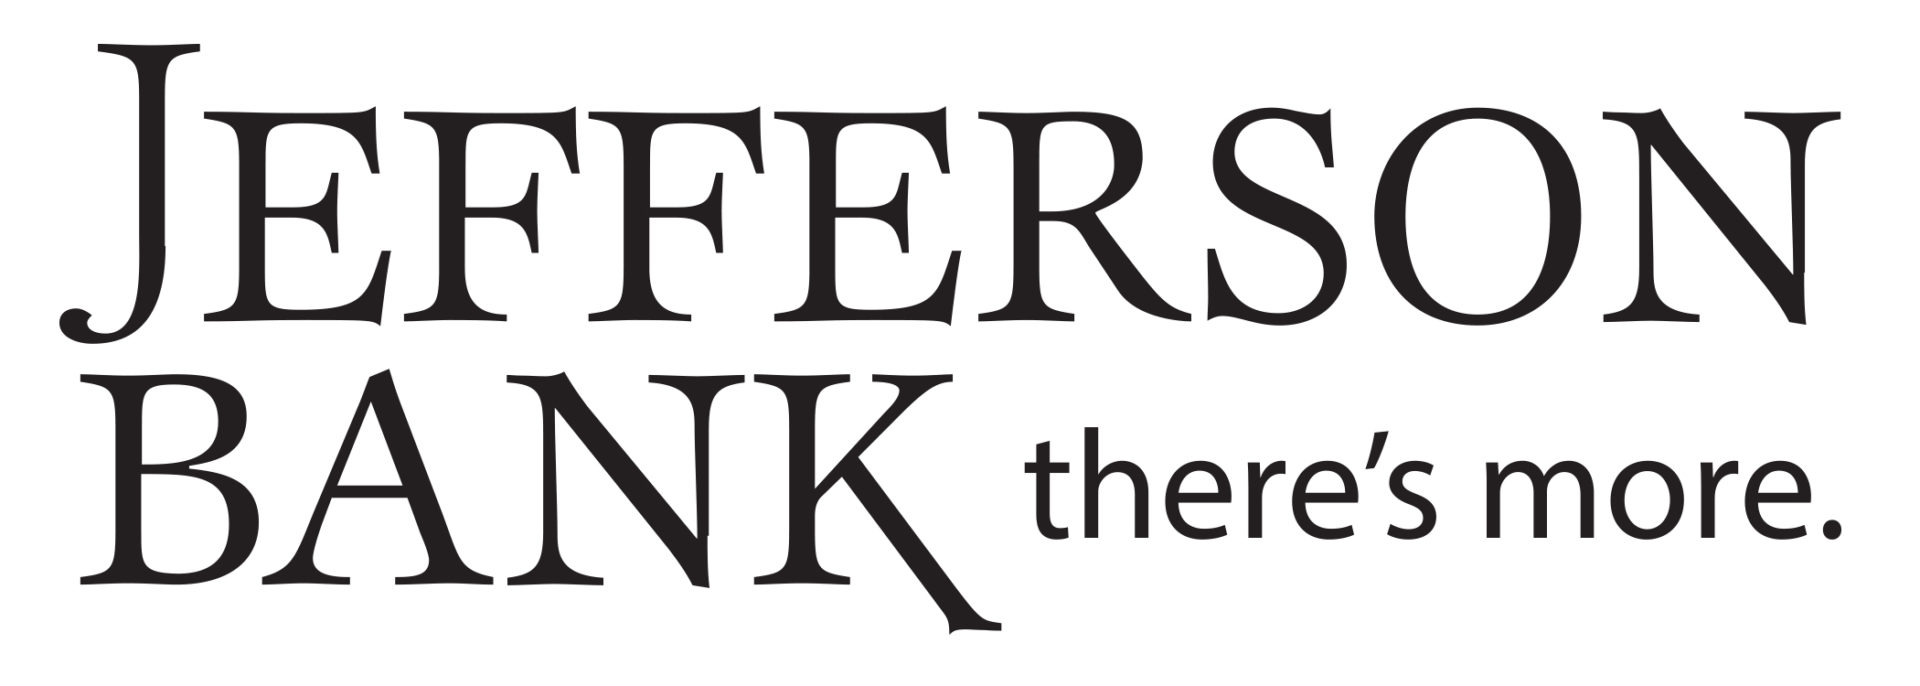 Jefferson Bank of Missouri